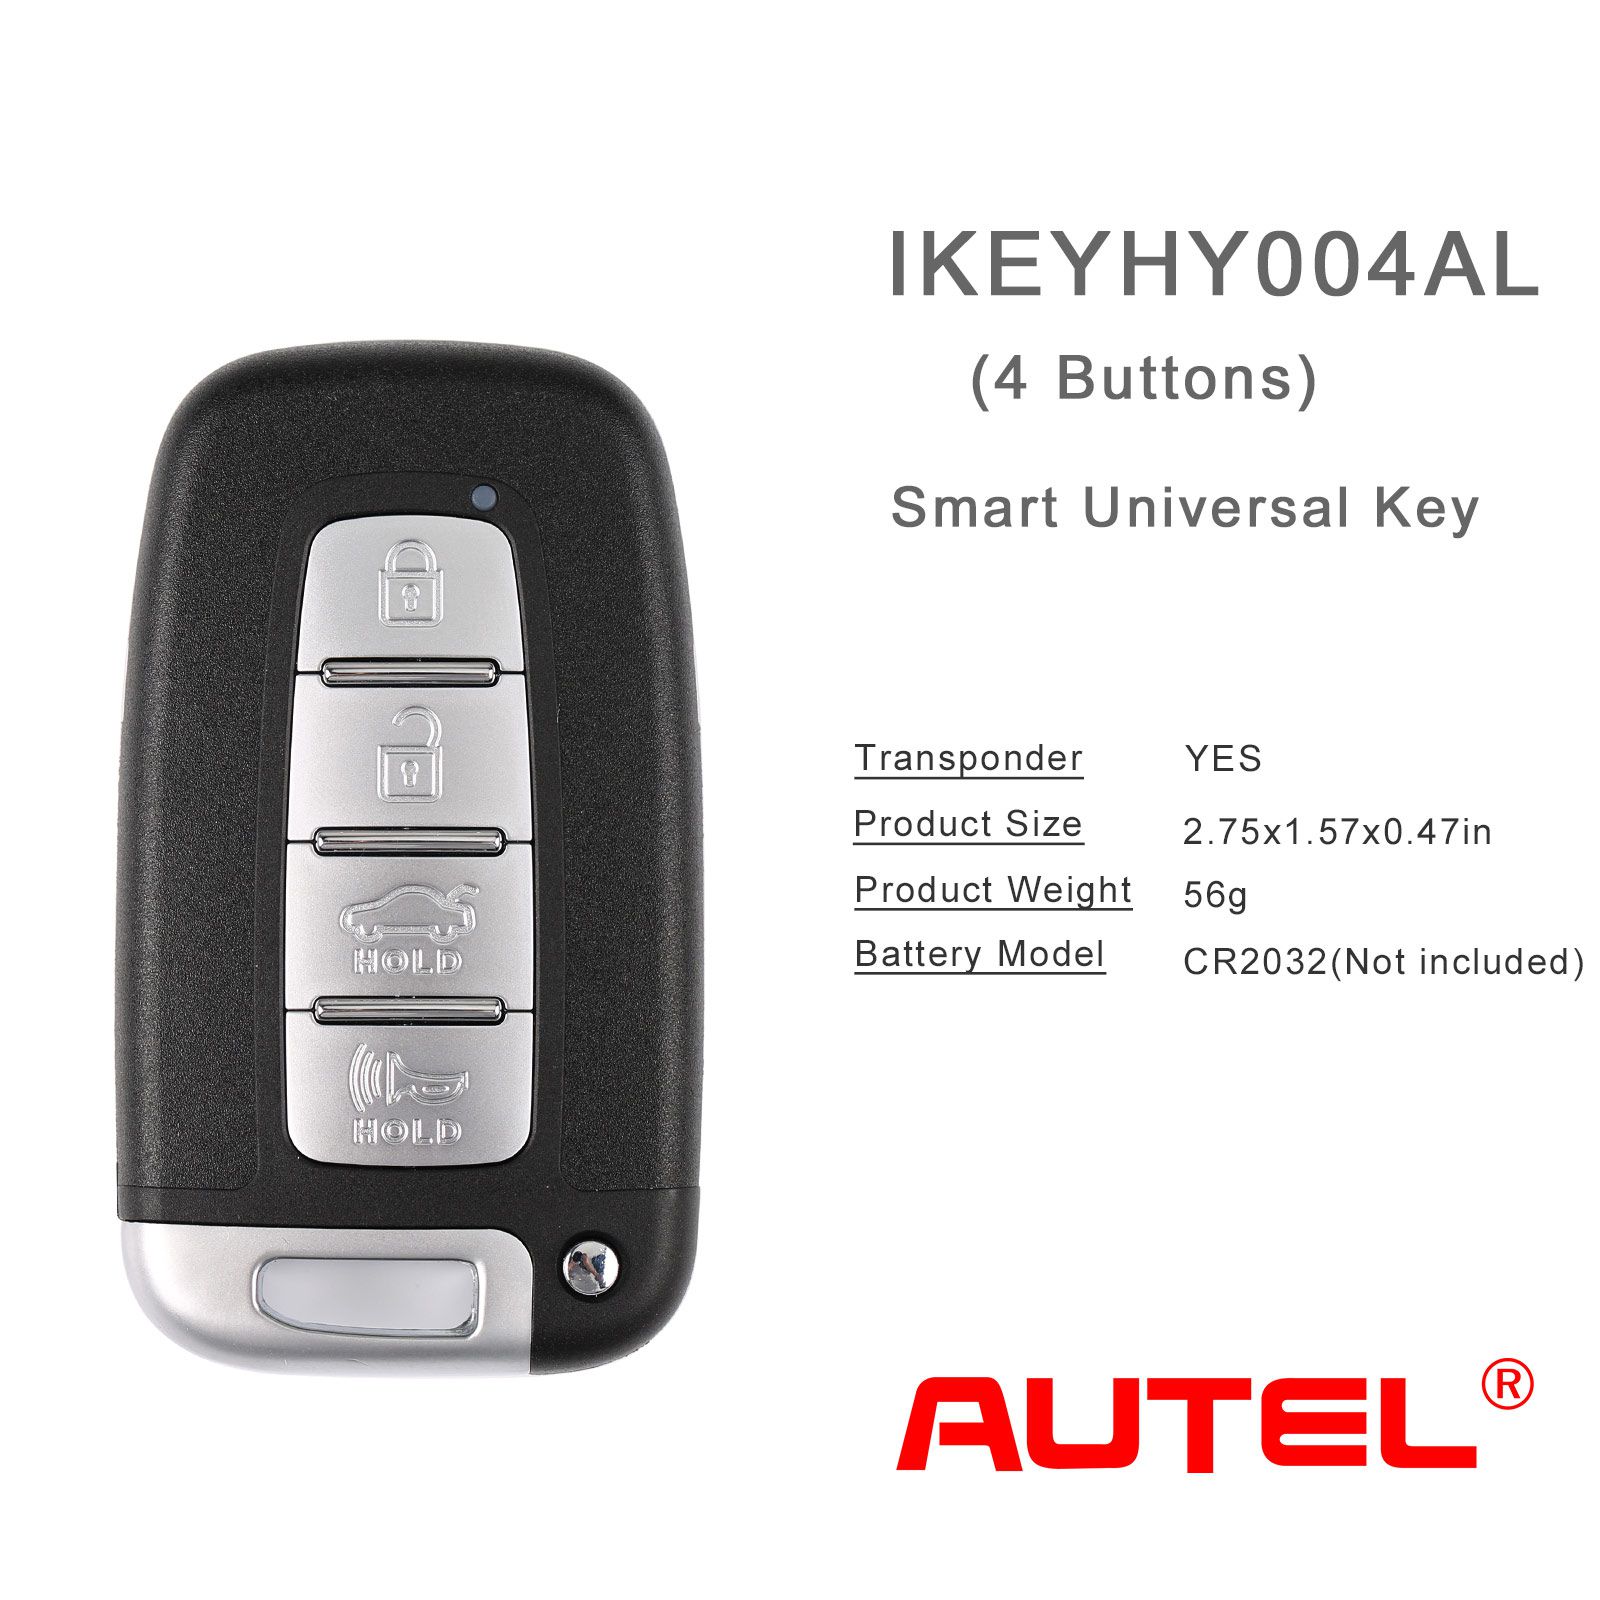 AUTEL IKEYHY004AL Hyundai 4 Buttons Universal Smart Key 5pcs/lot